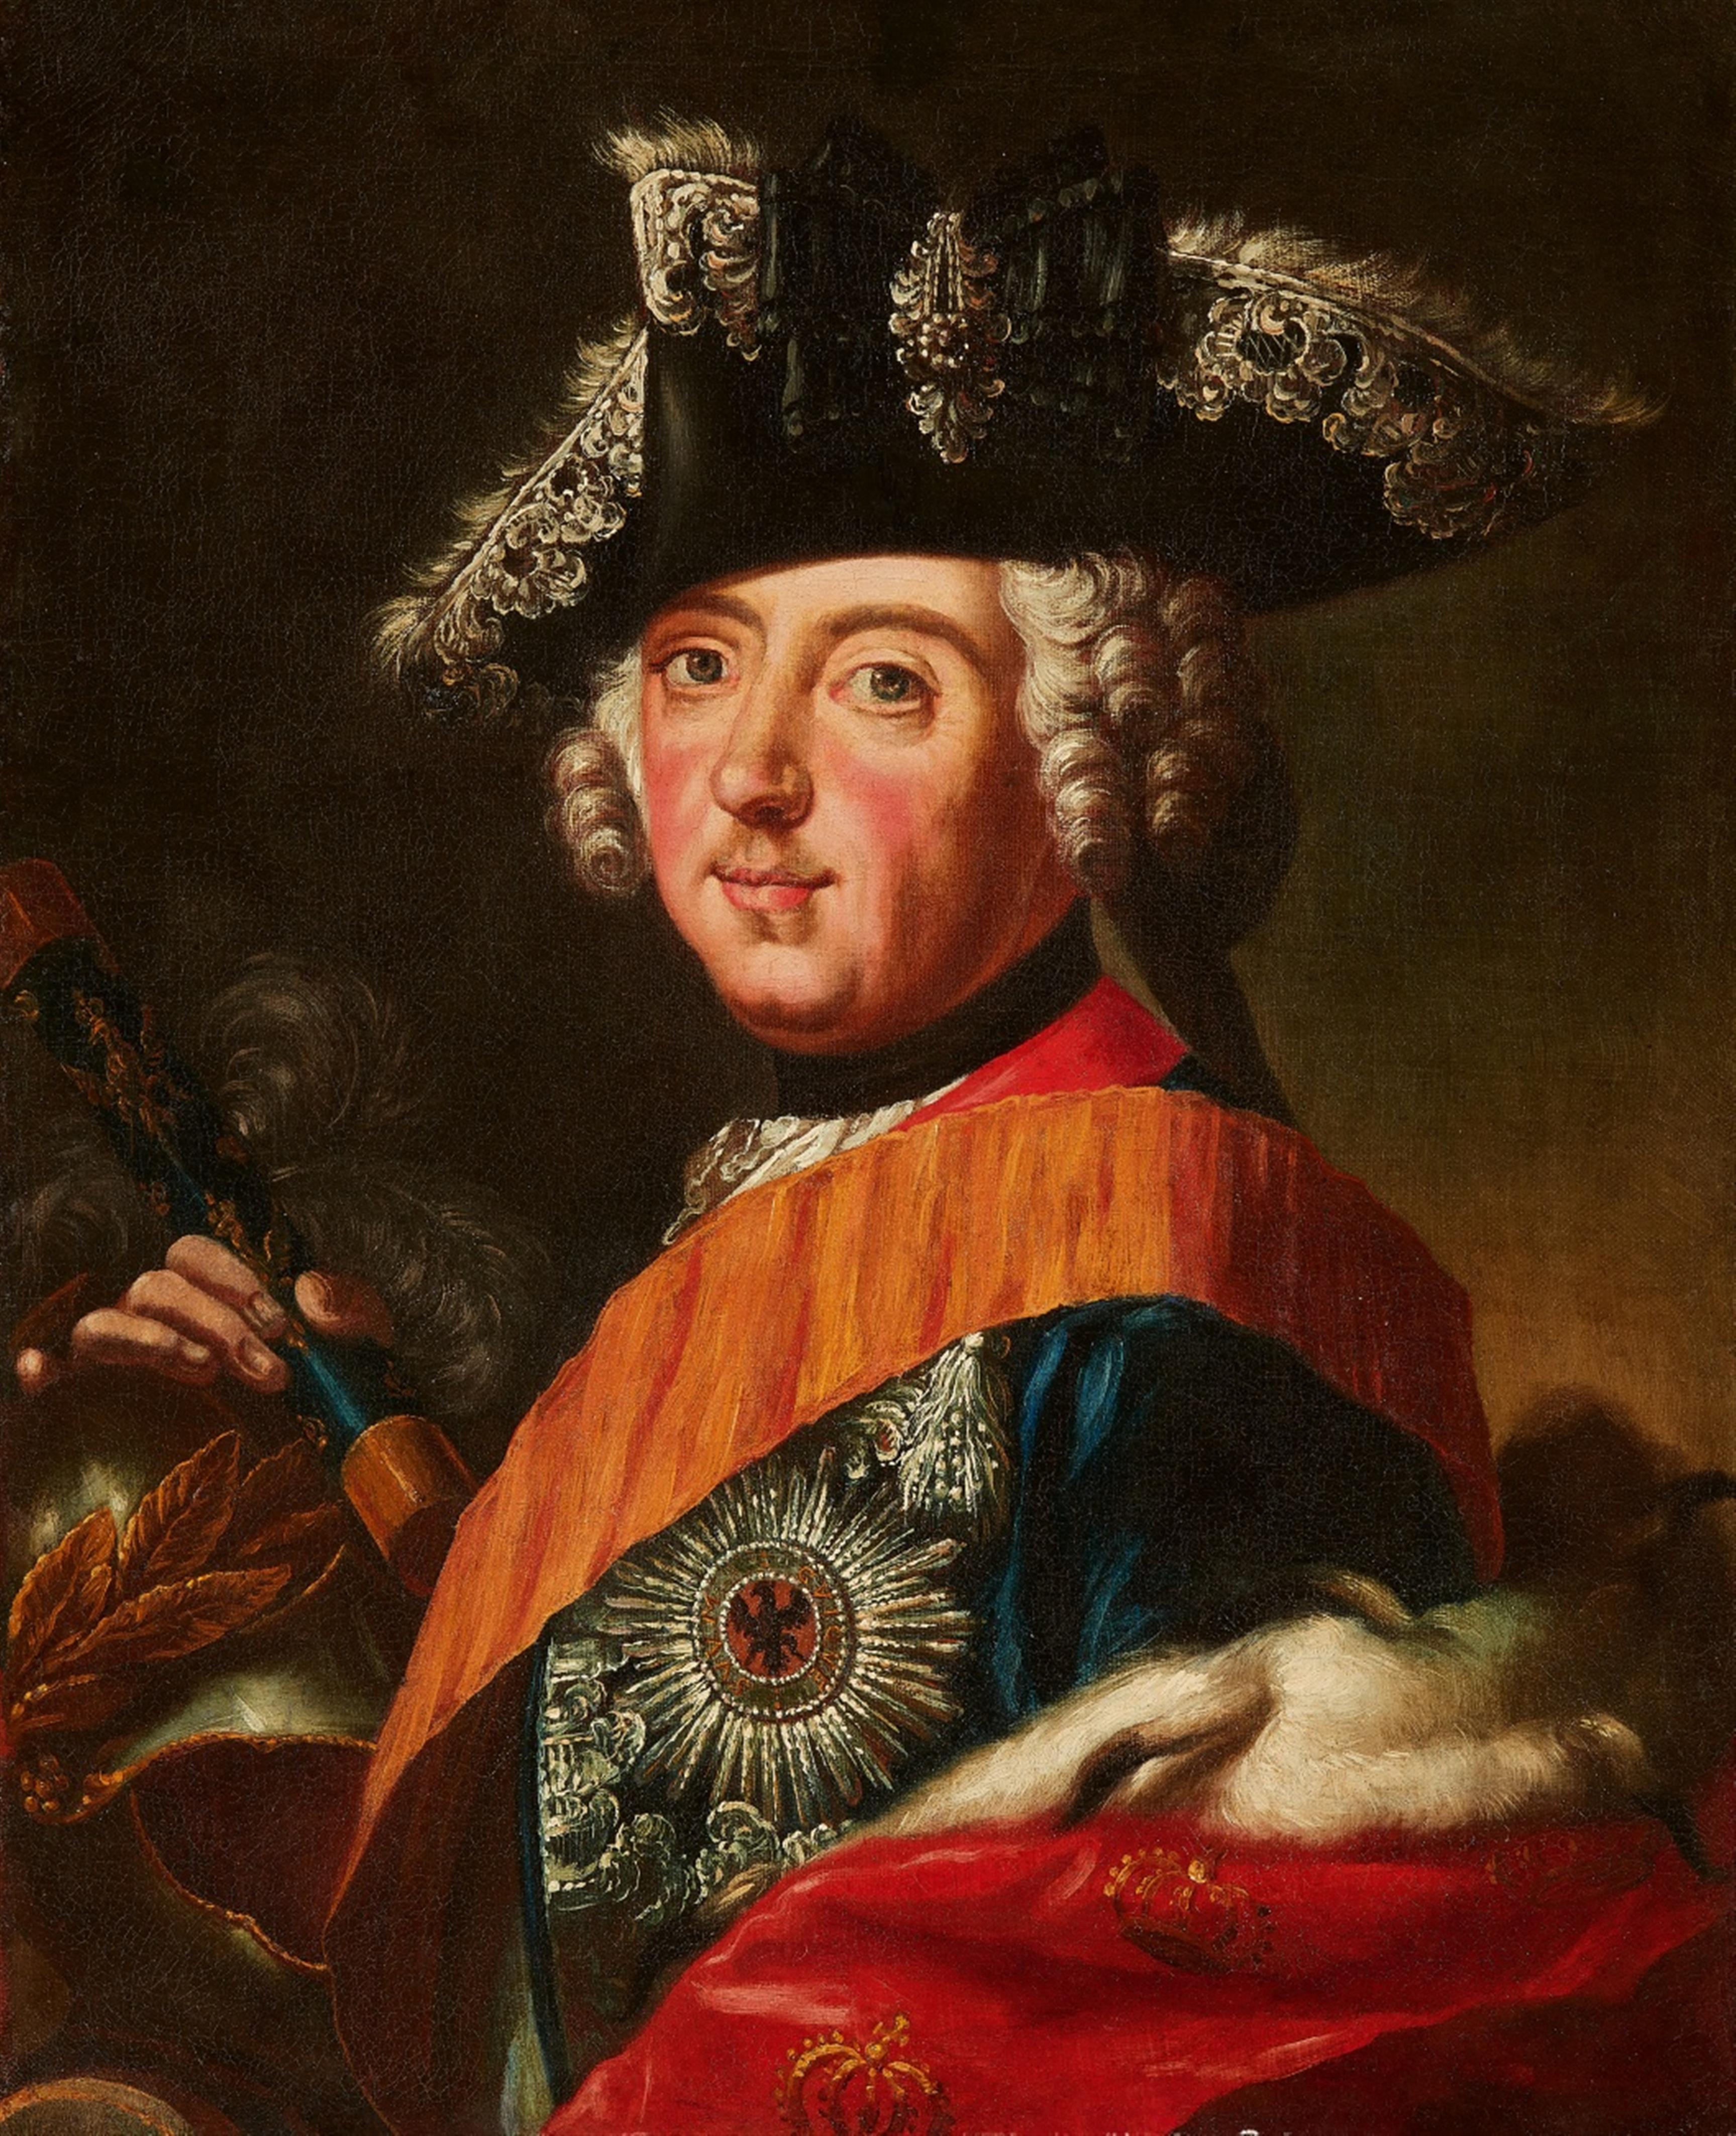 Unbekannter Künstler um 1750 - Bildnis von Friedrich dem Großen mit Dreispitz - image-1